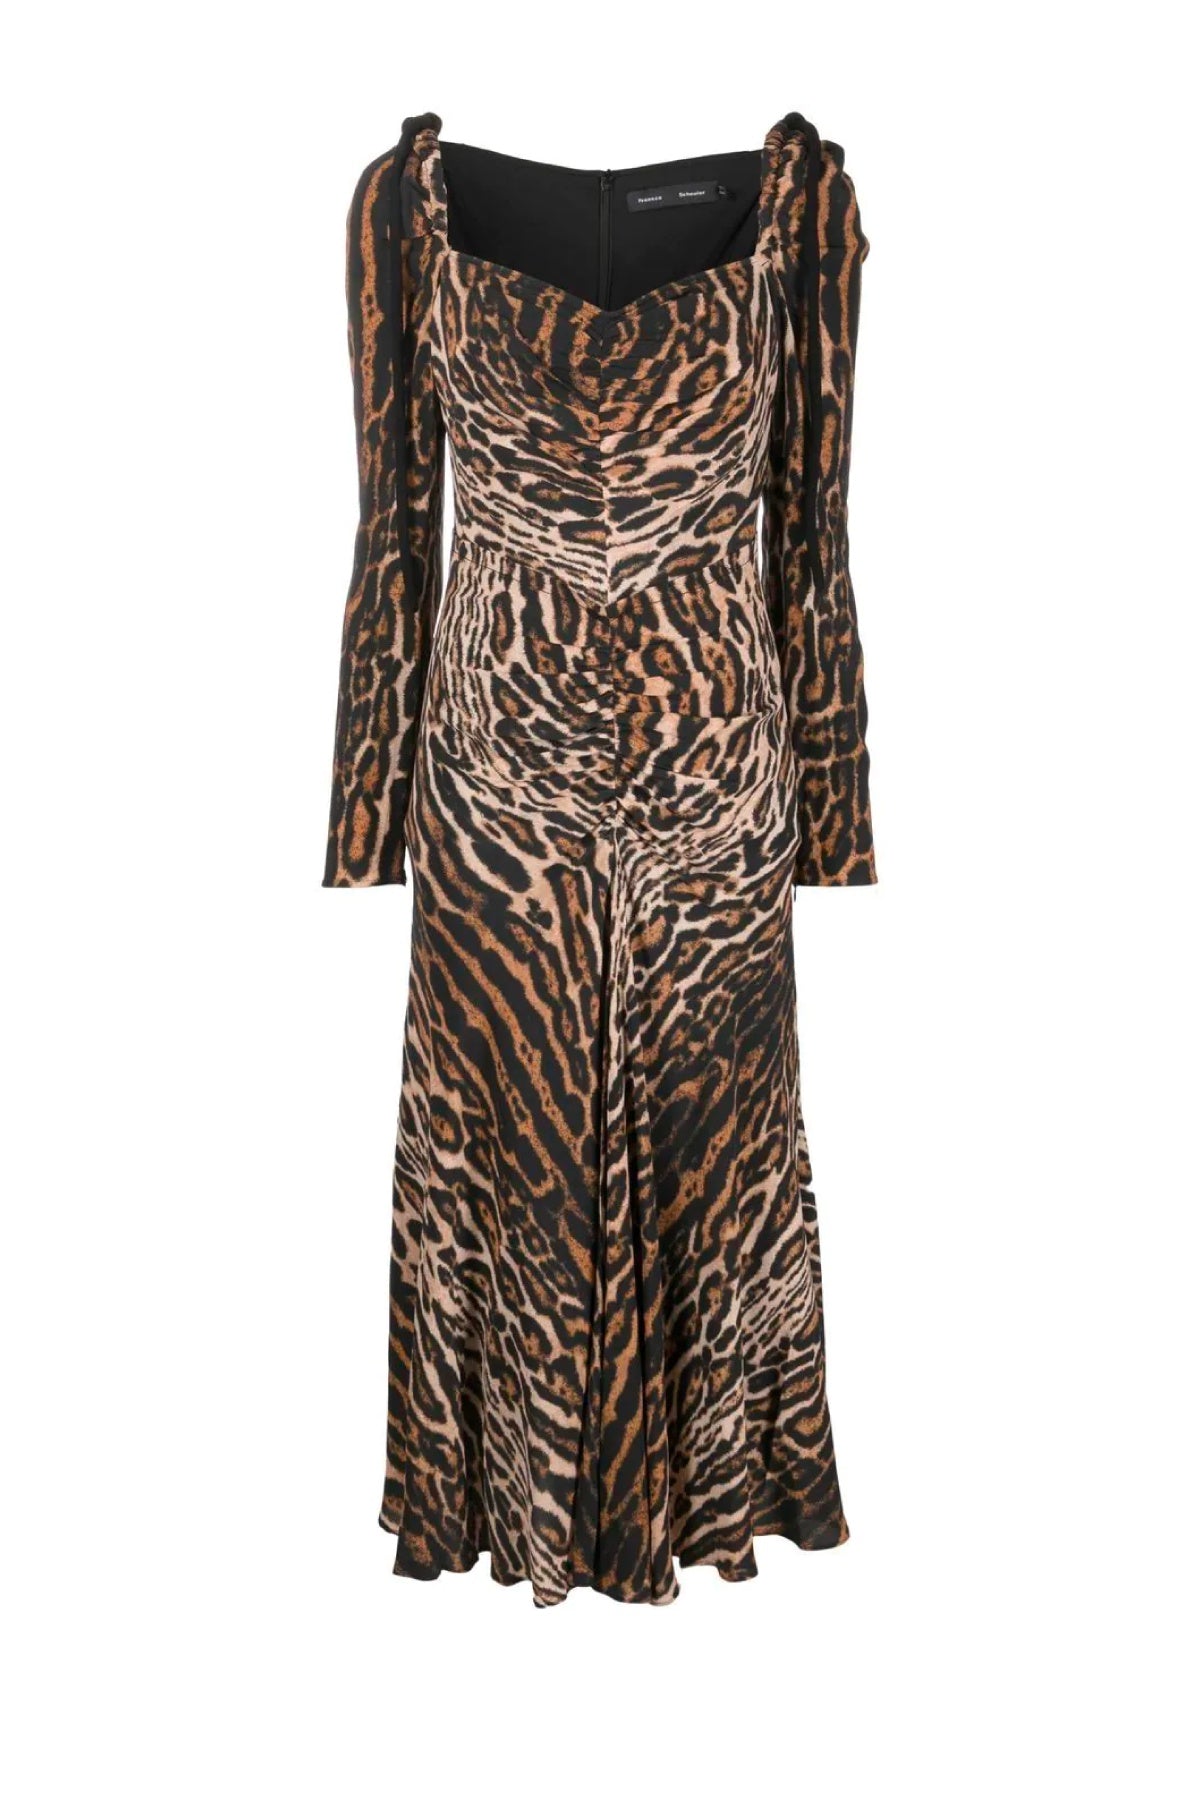 Proenza Schouler Leopard Print Cinched Dress - Brown Multi